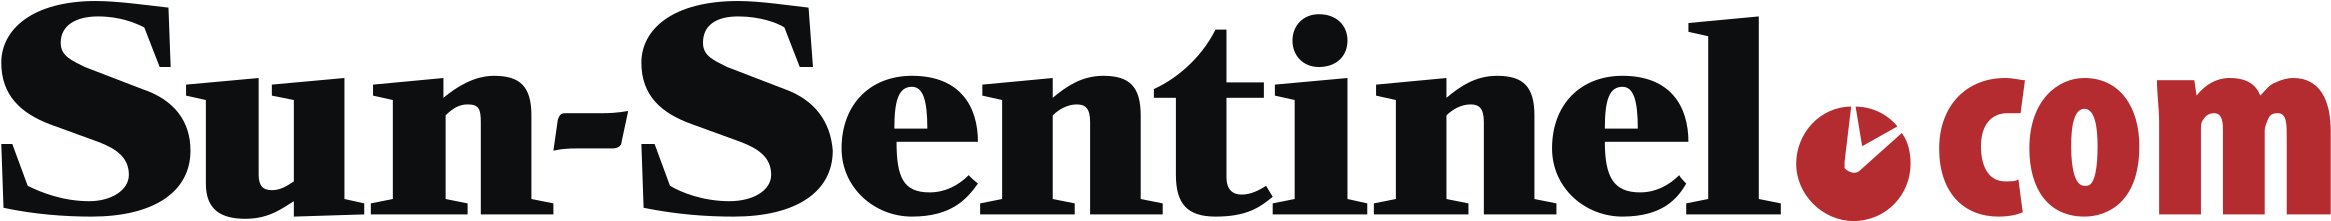 Sun Sentinel Com Logo Png Transparent - Dr Bicuspid Clipart (2400x2400), Png Download